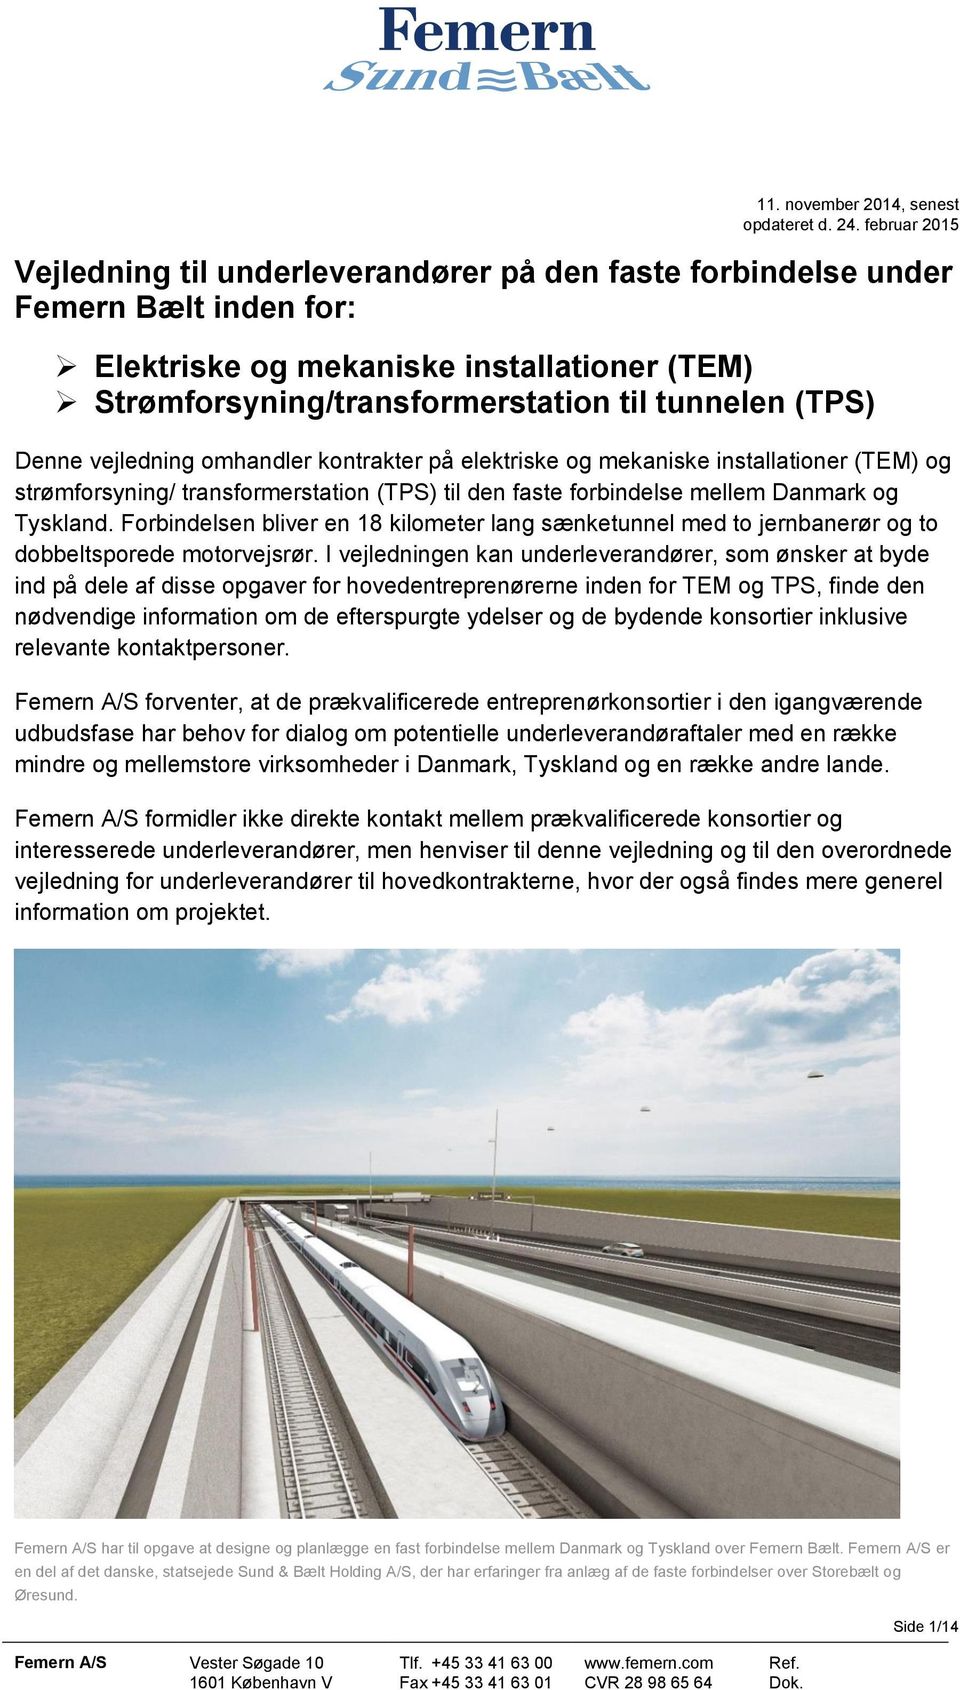 Denne vejledning omhandler kontrakter på elektriske og mekaniske installationer (TEM) og strømforsyning/ transformerstation (TPS) til den faste forbindelse mellem Danmark og Tyskland.